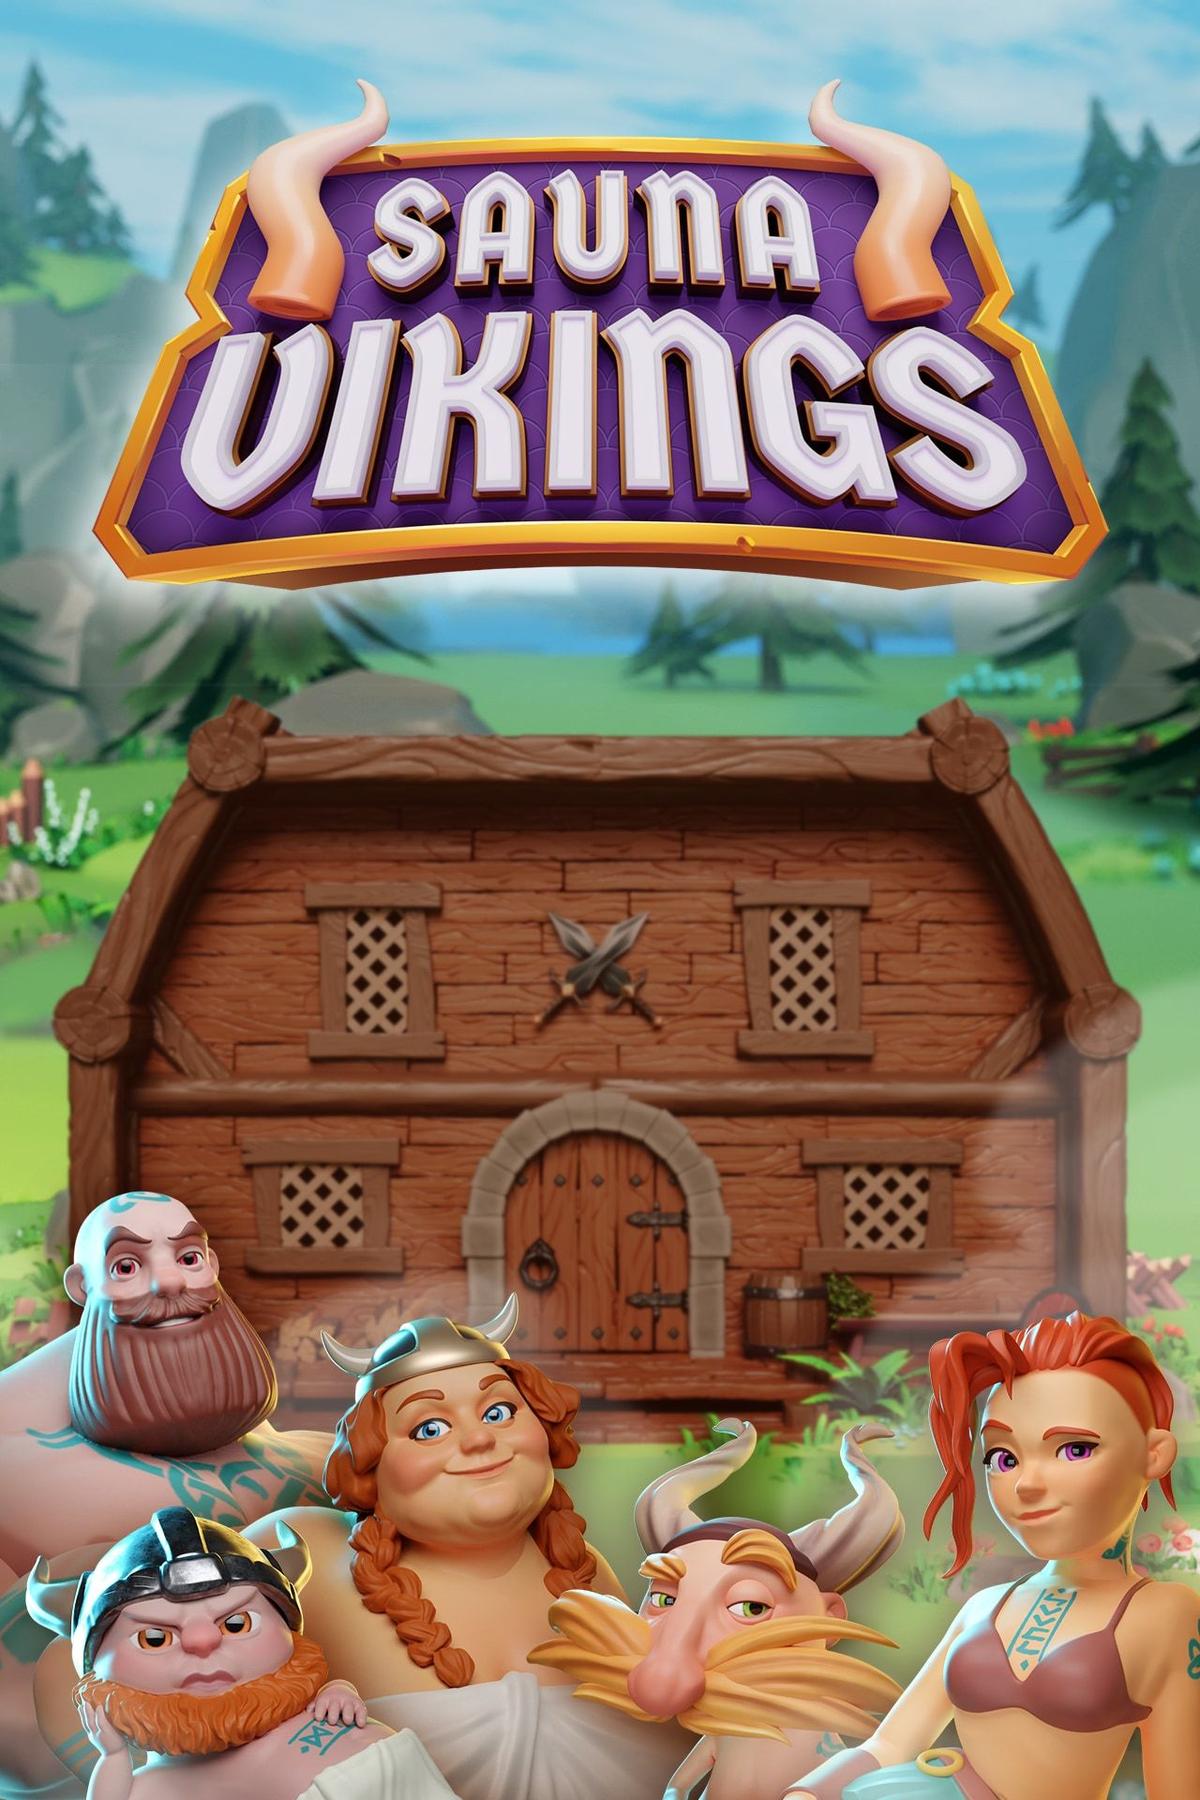 Sauna Vikings